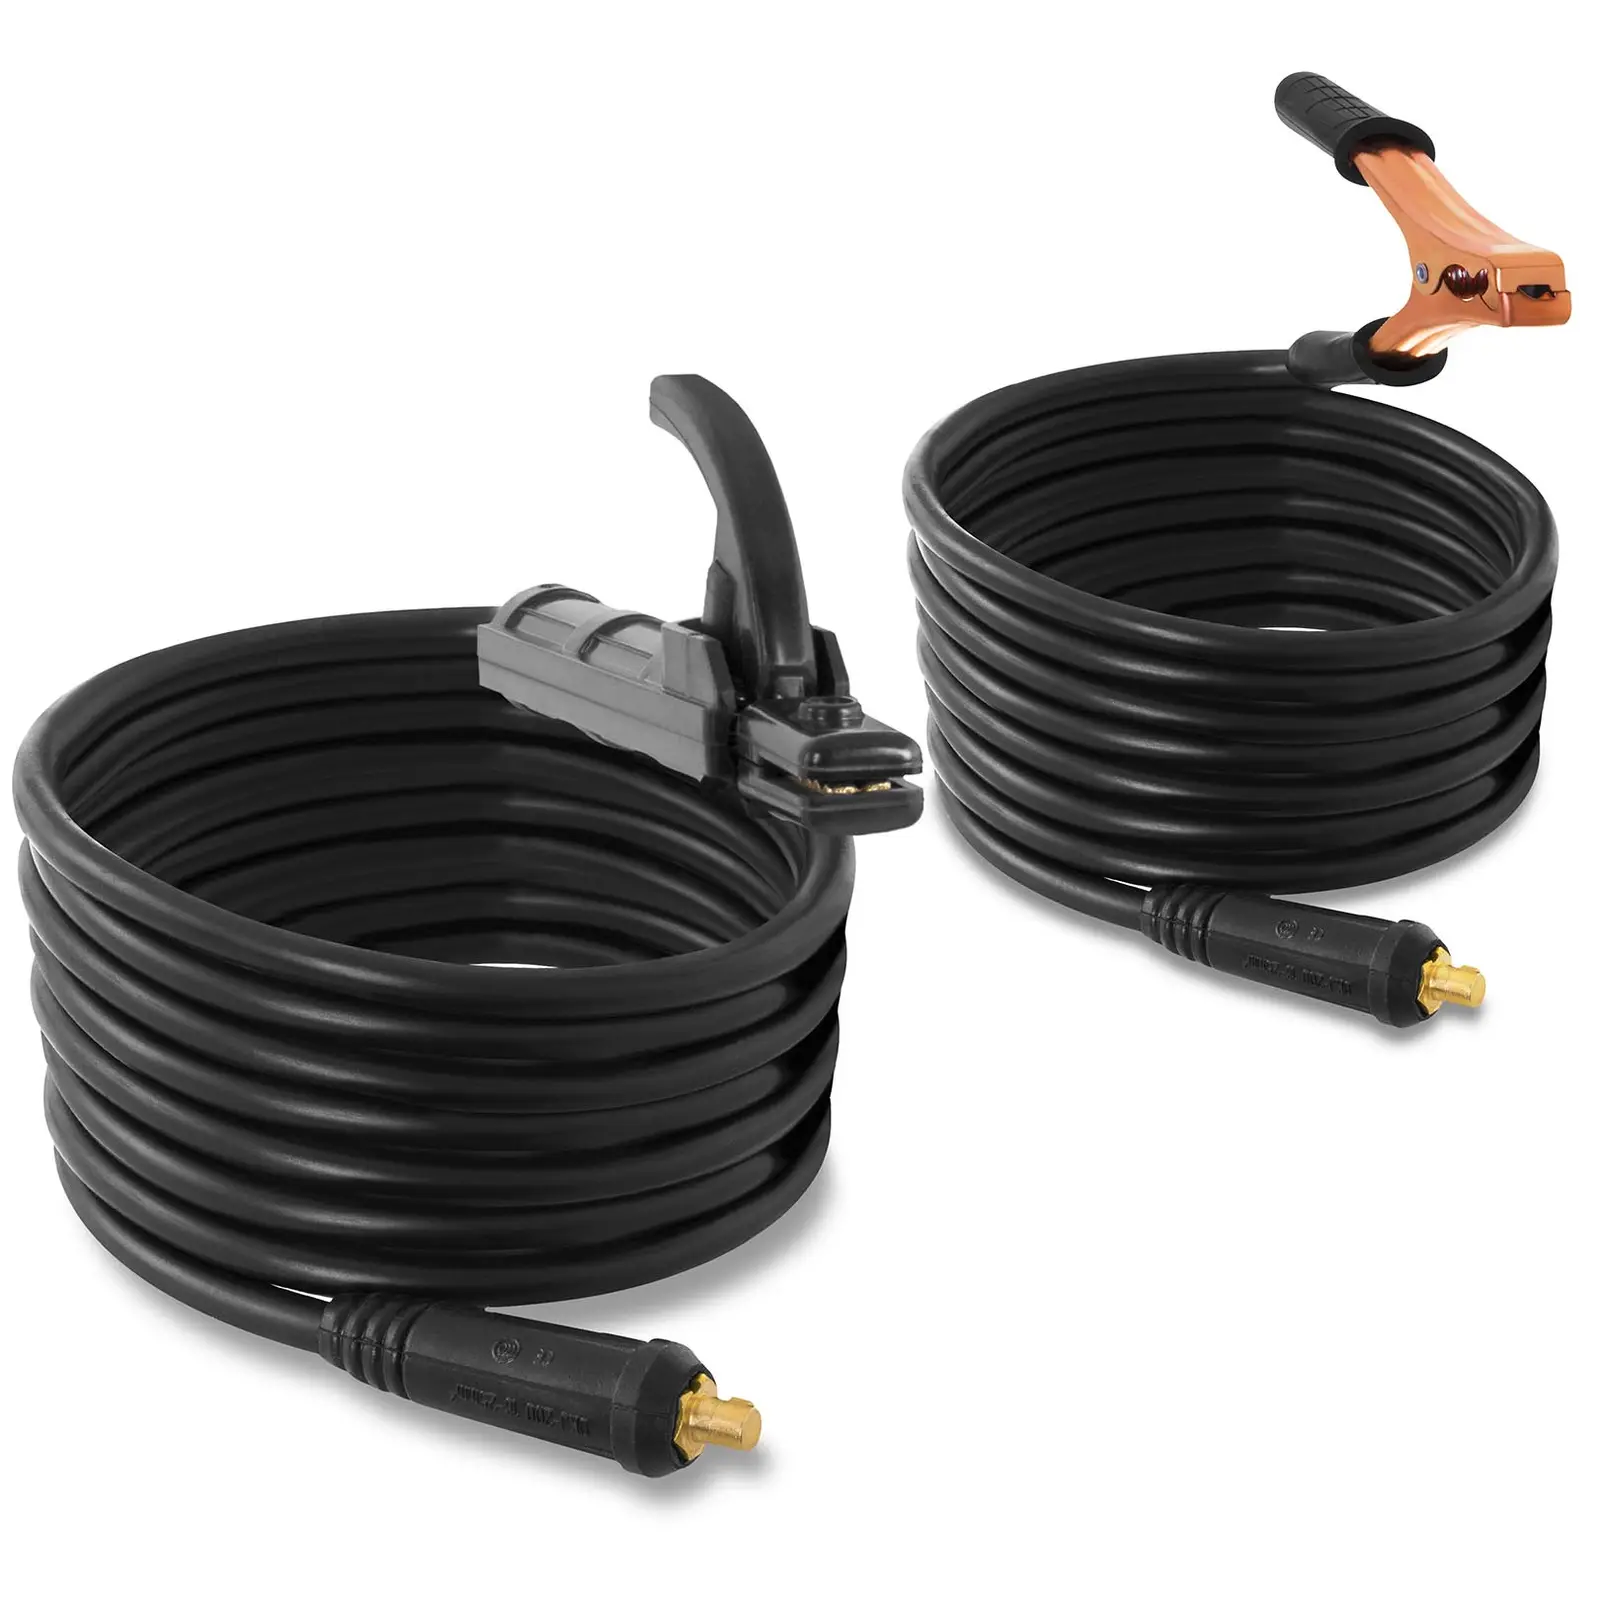 Sett: Elektrodesveiser - sett med 2 sveisemagneter - 250 A - 8 m kabel - hot-start